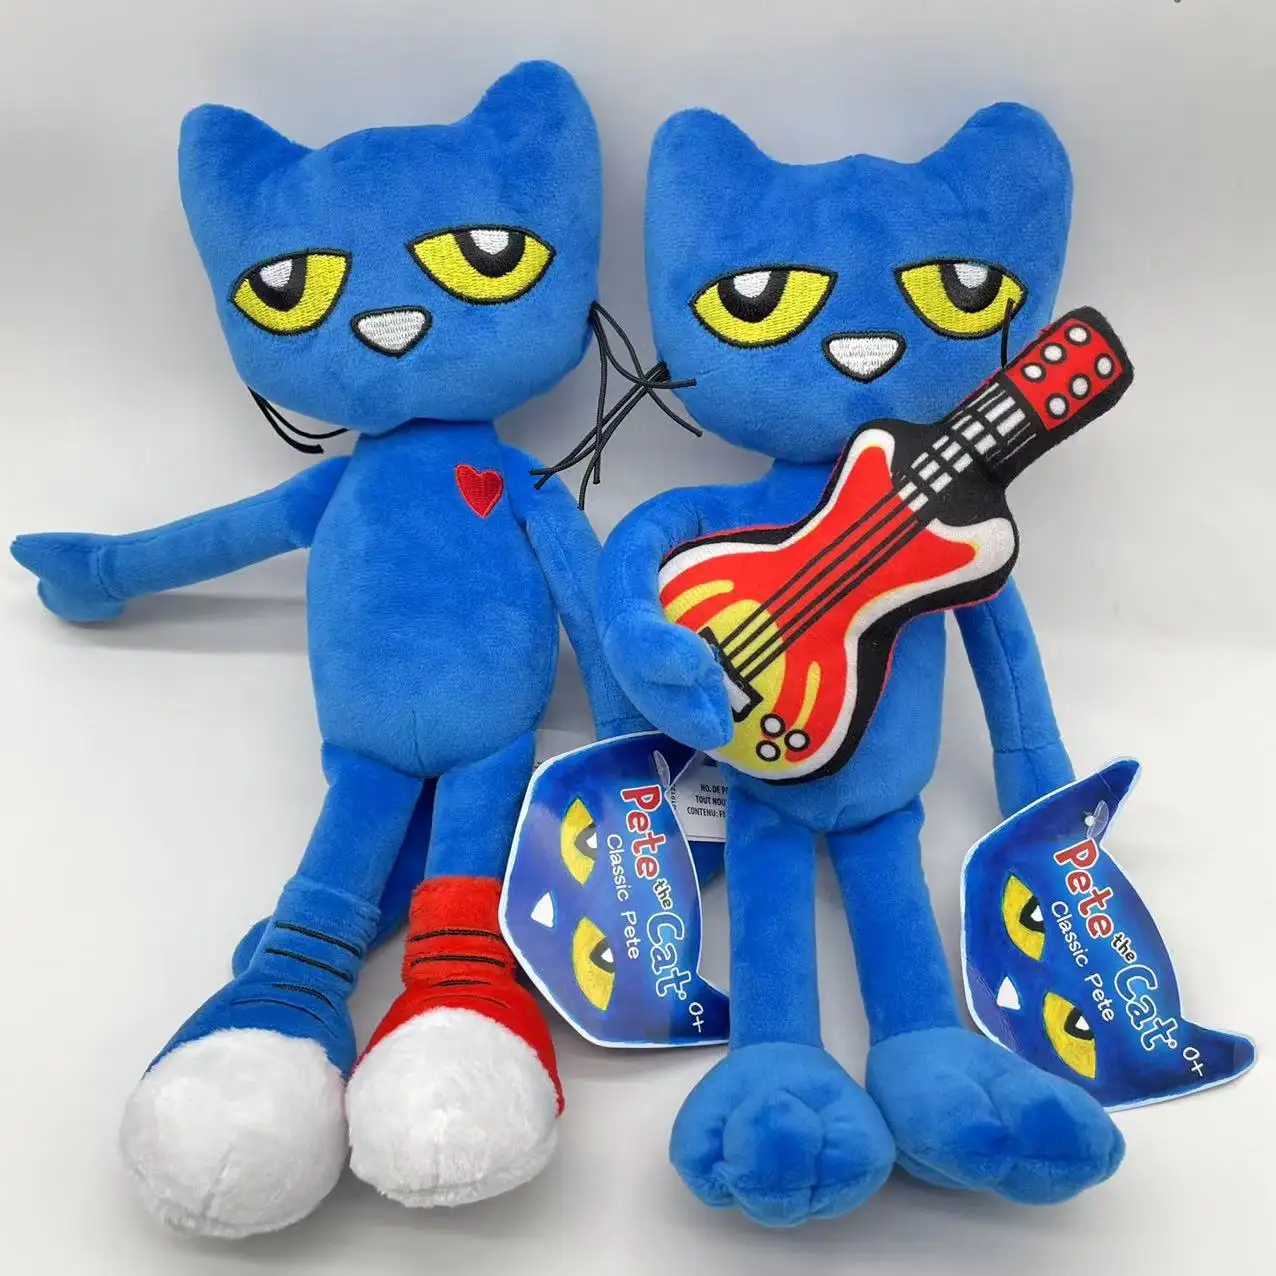 Hot Pete-The Cat Plush Toy Blue Pete-The Cat Juguetes de animales de peluche con guitarra Cartoon Pete-The Cat Plushie Doll Regalo de Navidad